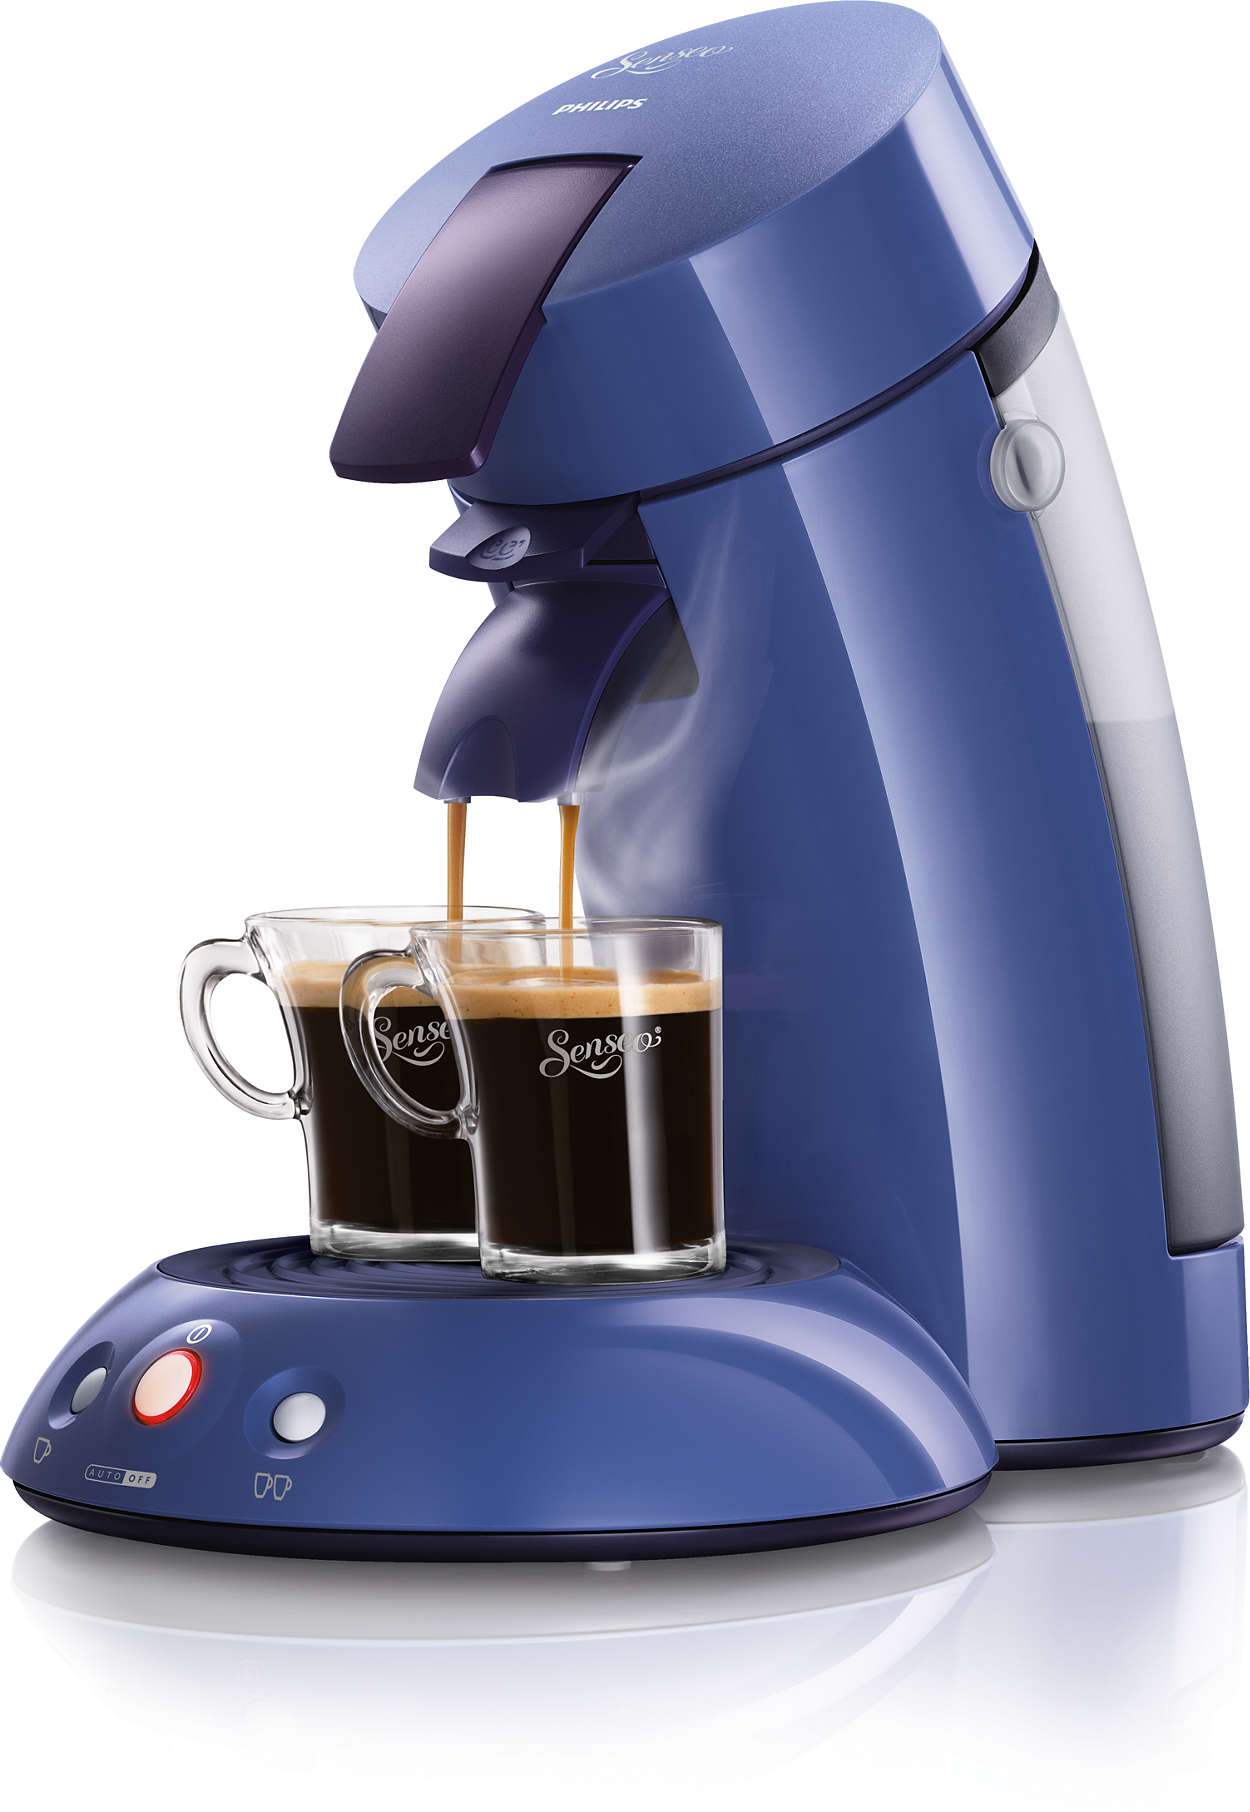 Senseo kaffeepadmaschine 7810 - Der Testsieger der Redaktion